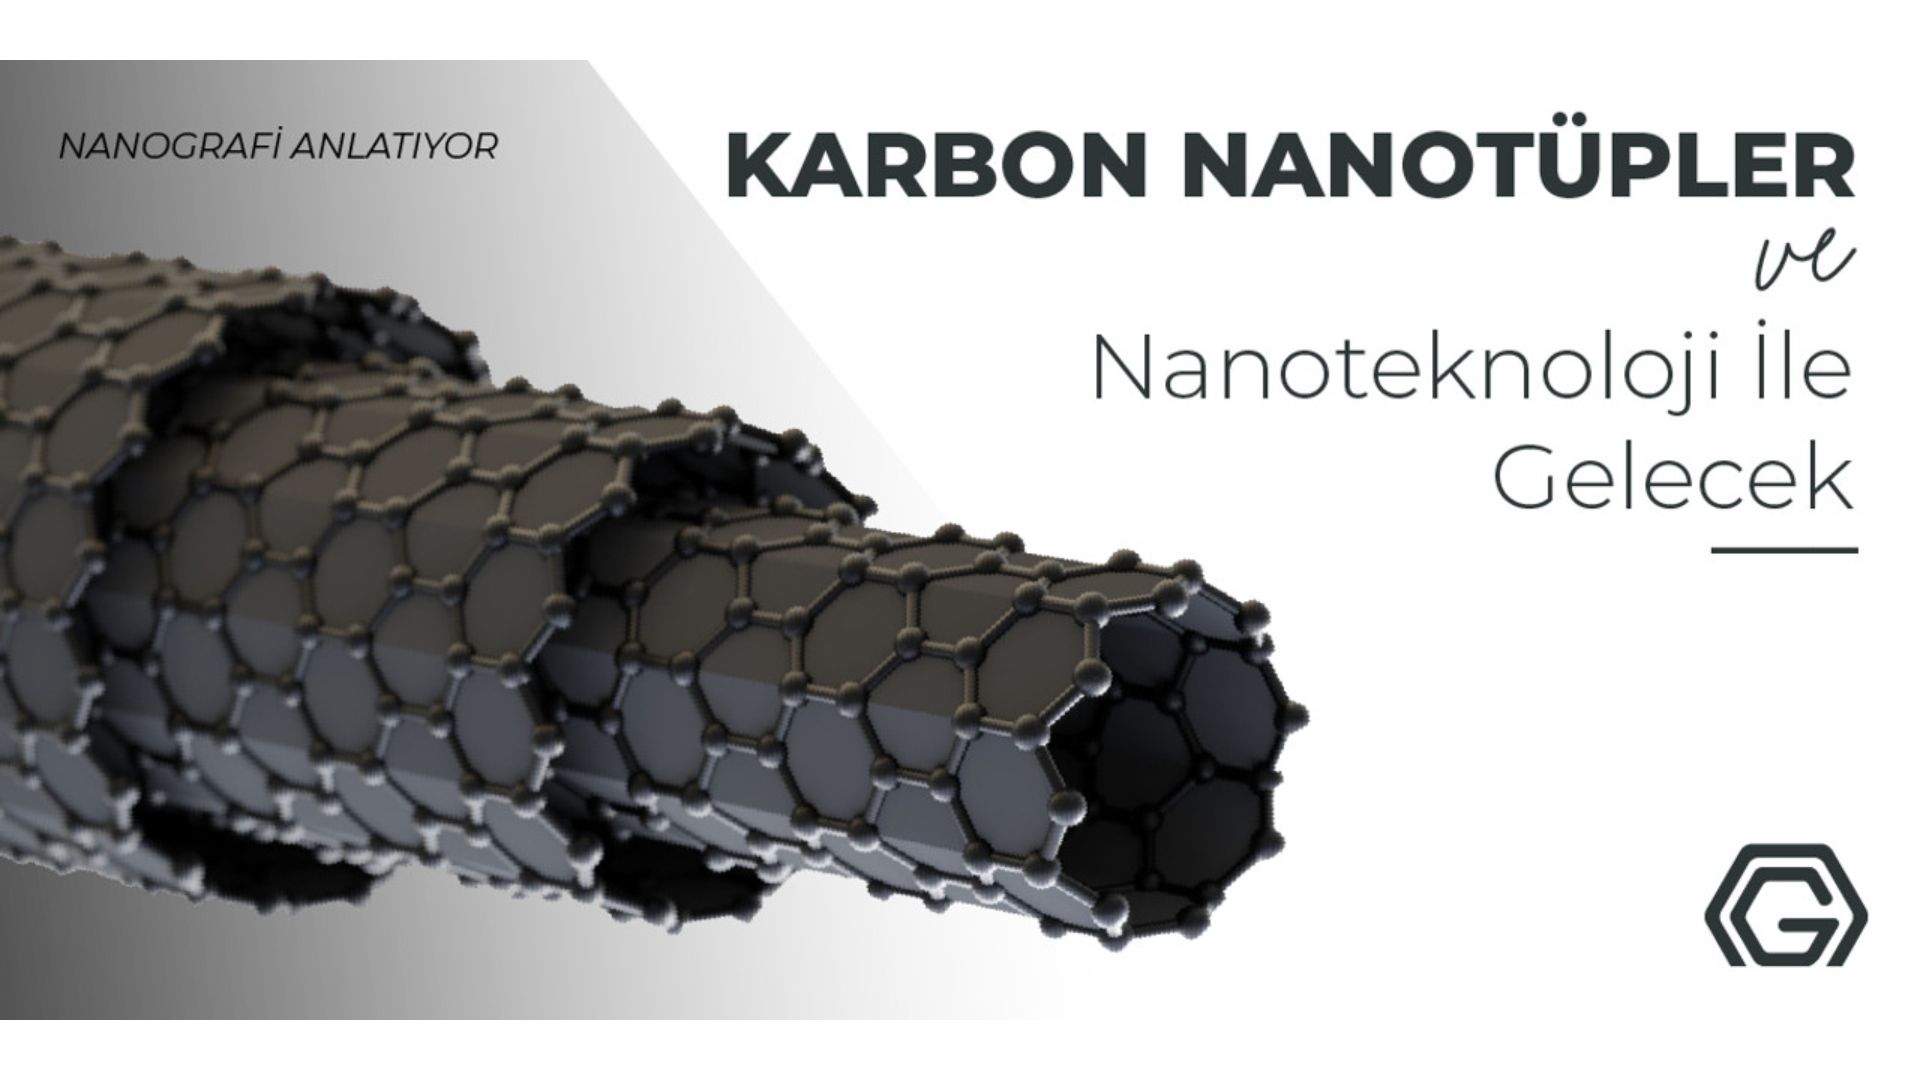 Karbon Nanotüpler için bizimle iletişime geçin